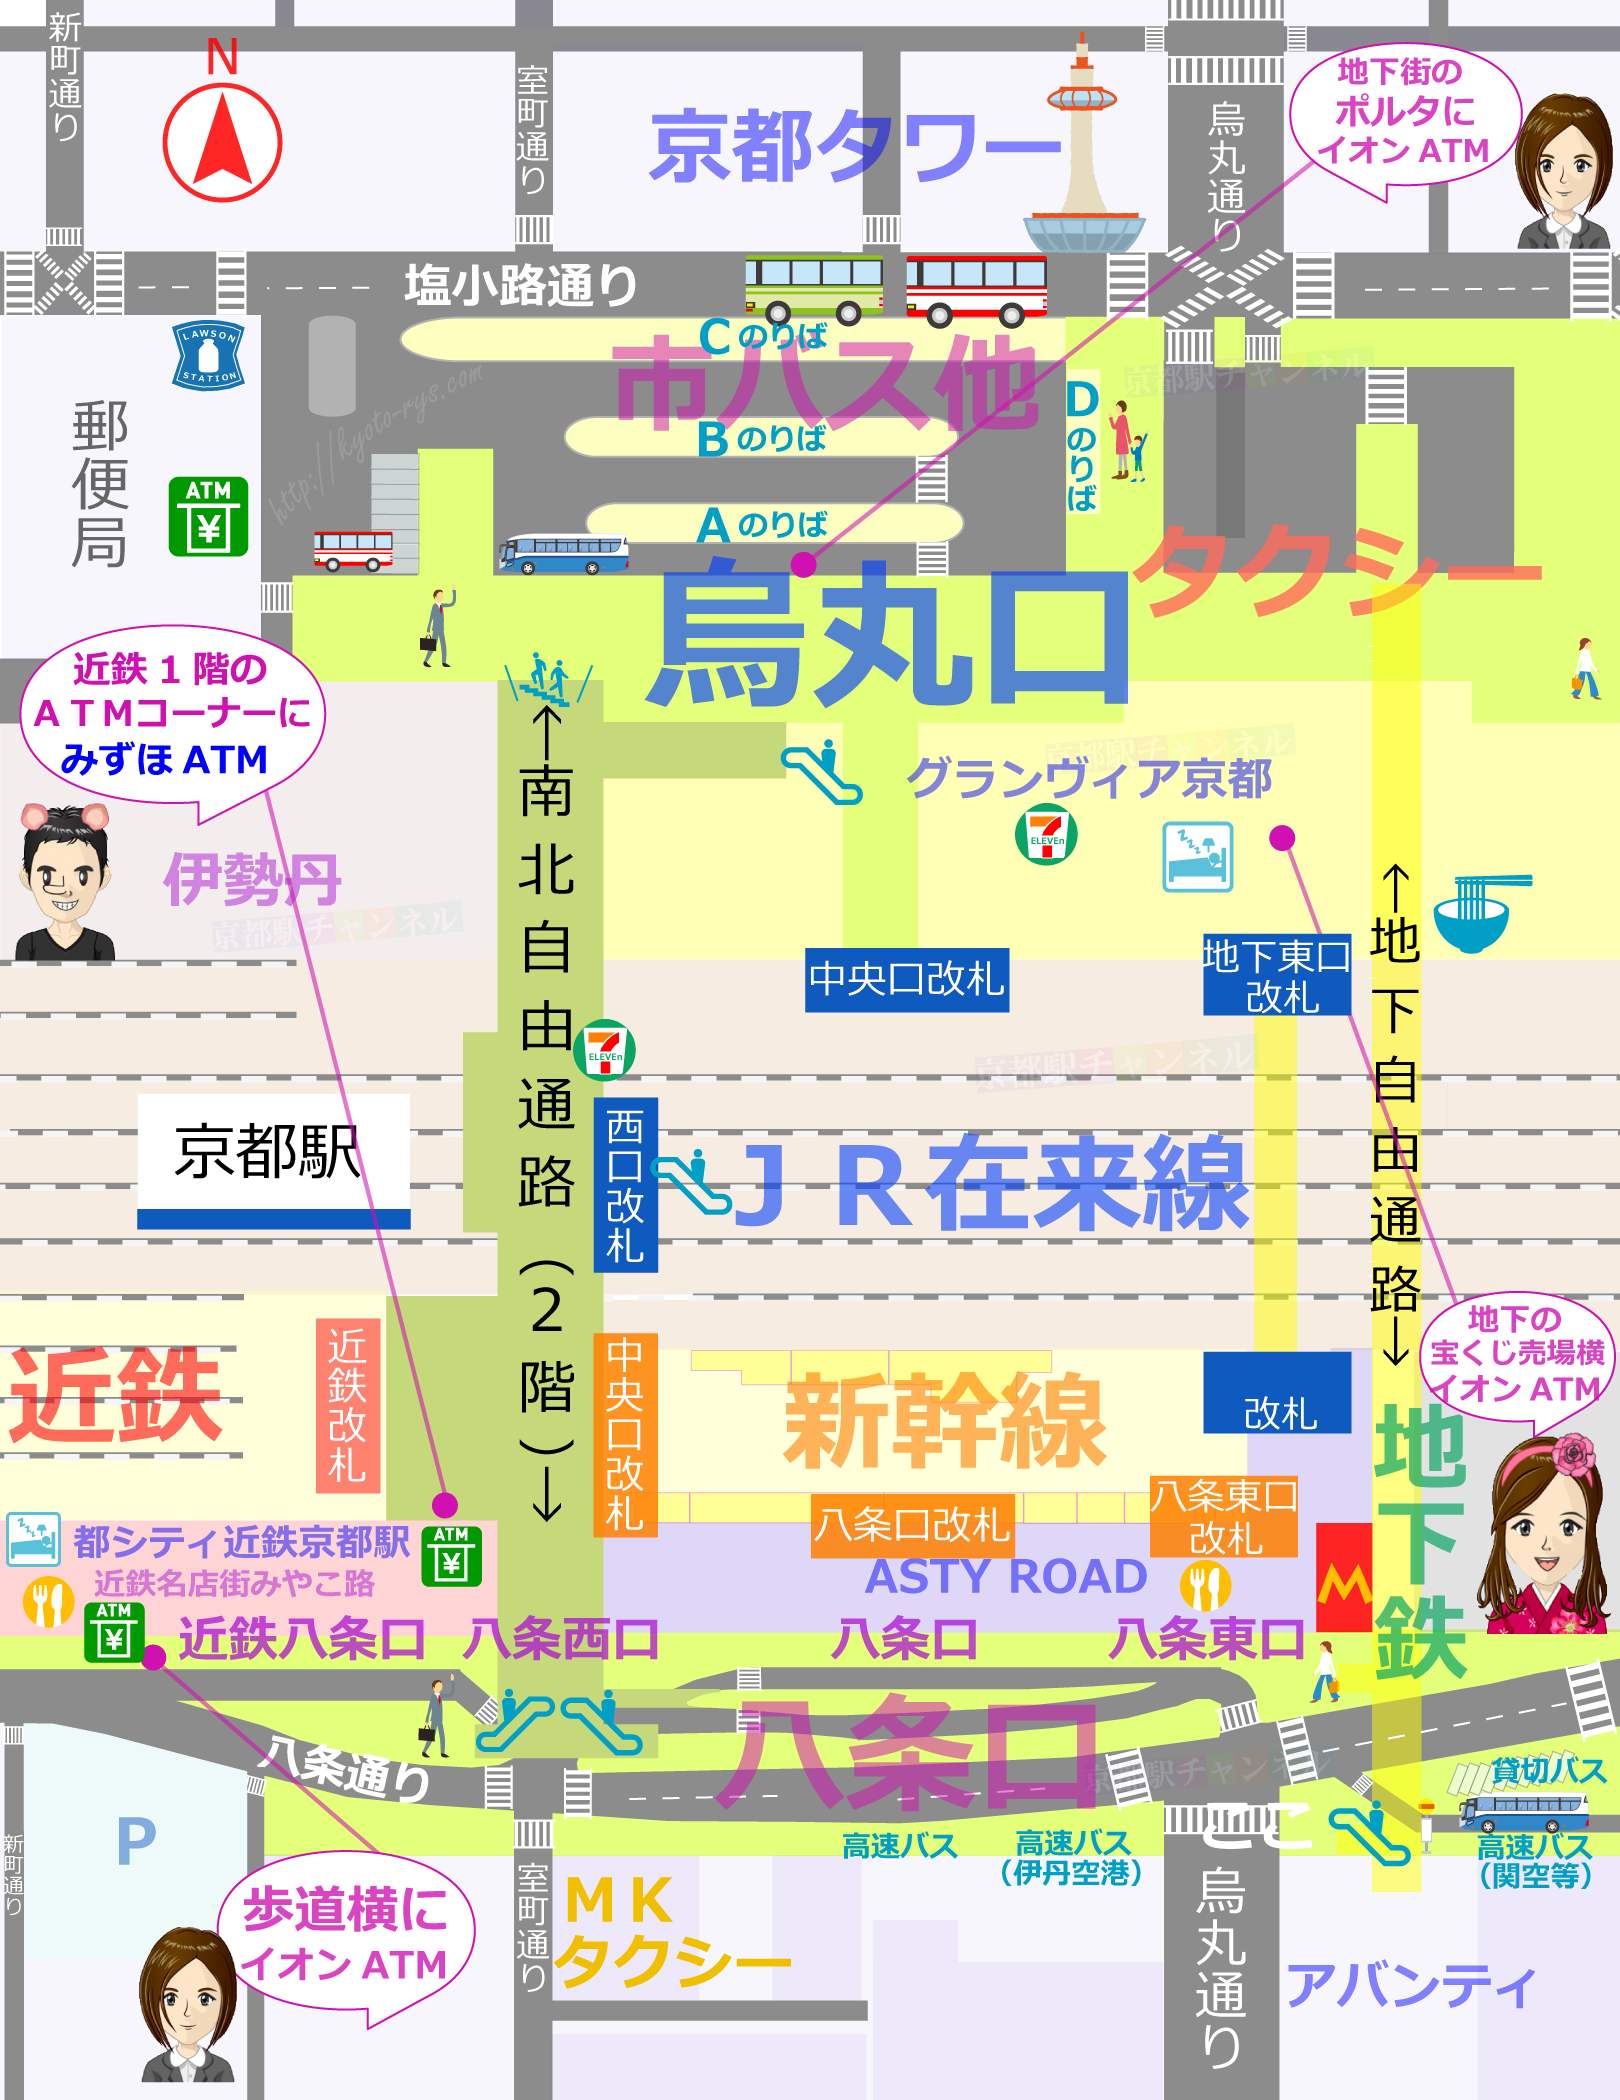 京都駅の全体図とみずほ、イオン銀行のATMのマップ